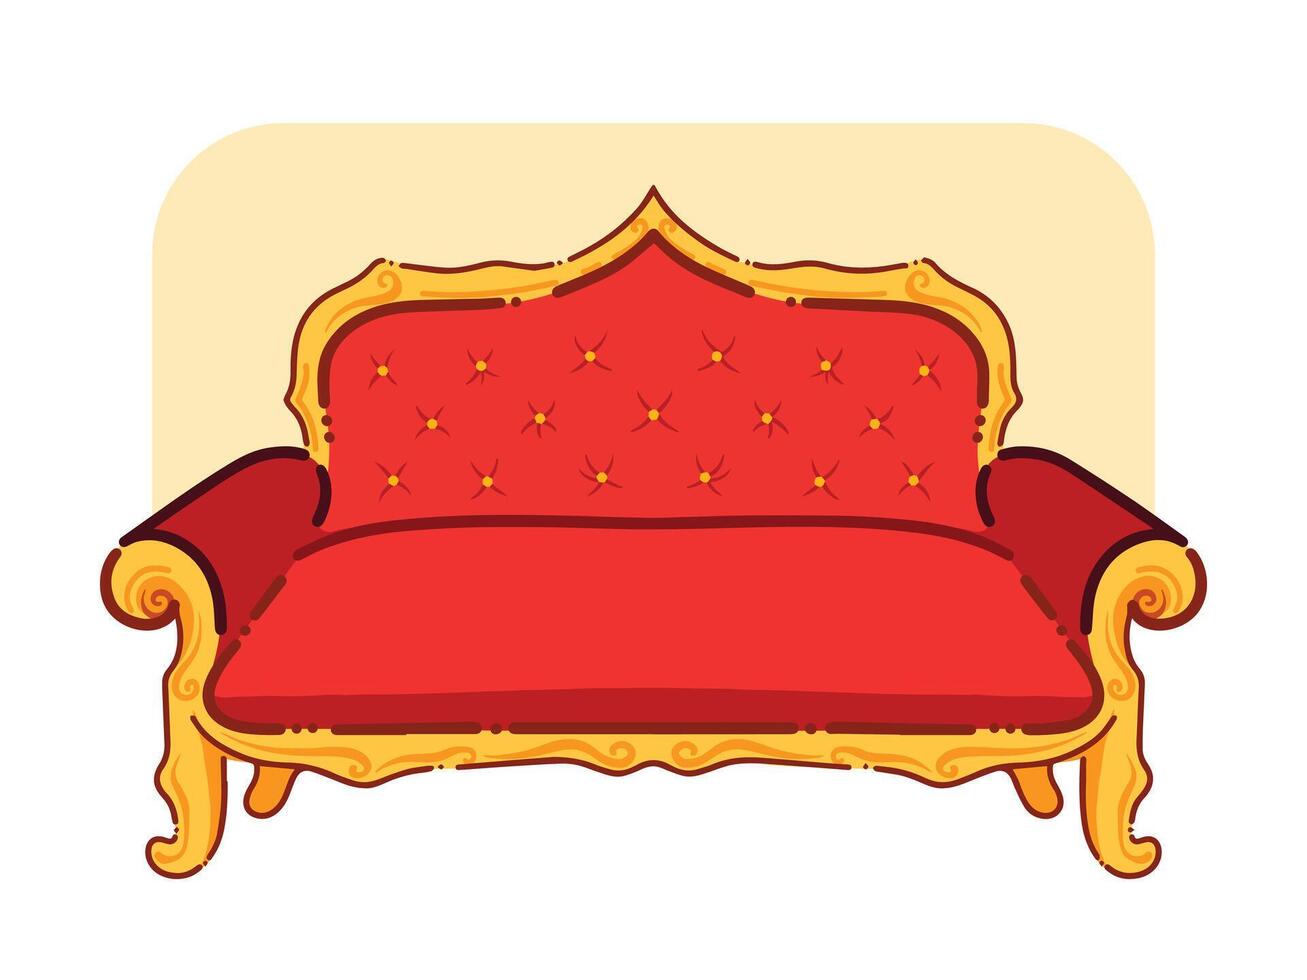 rojo y dorado amarillo de colores lujo costoso sofá asientos vector ilustración aislado en horizontal antecedentes. sencillo plano dibujos animados Arte estilizado cómodo salón sofá dibujo.